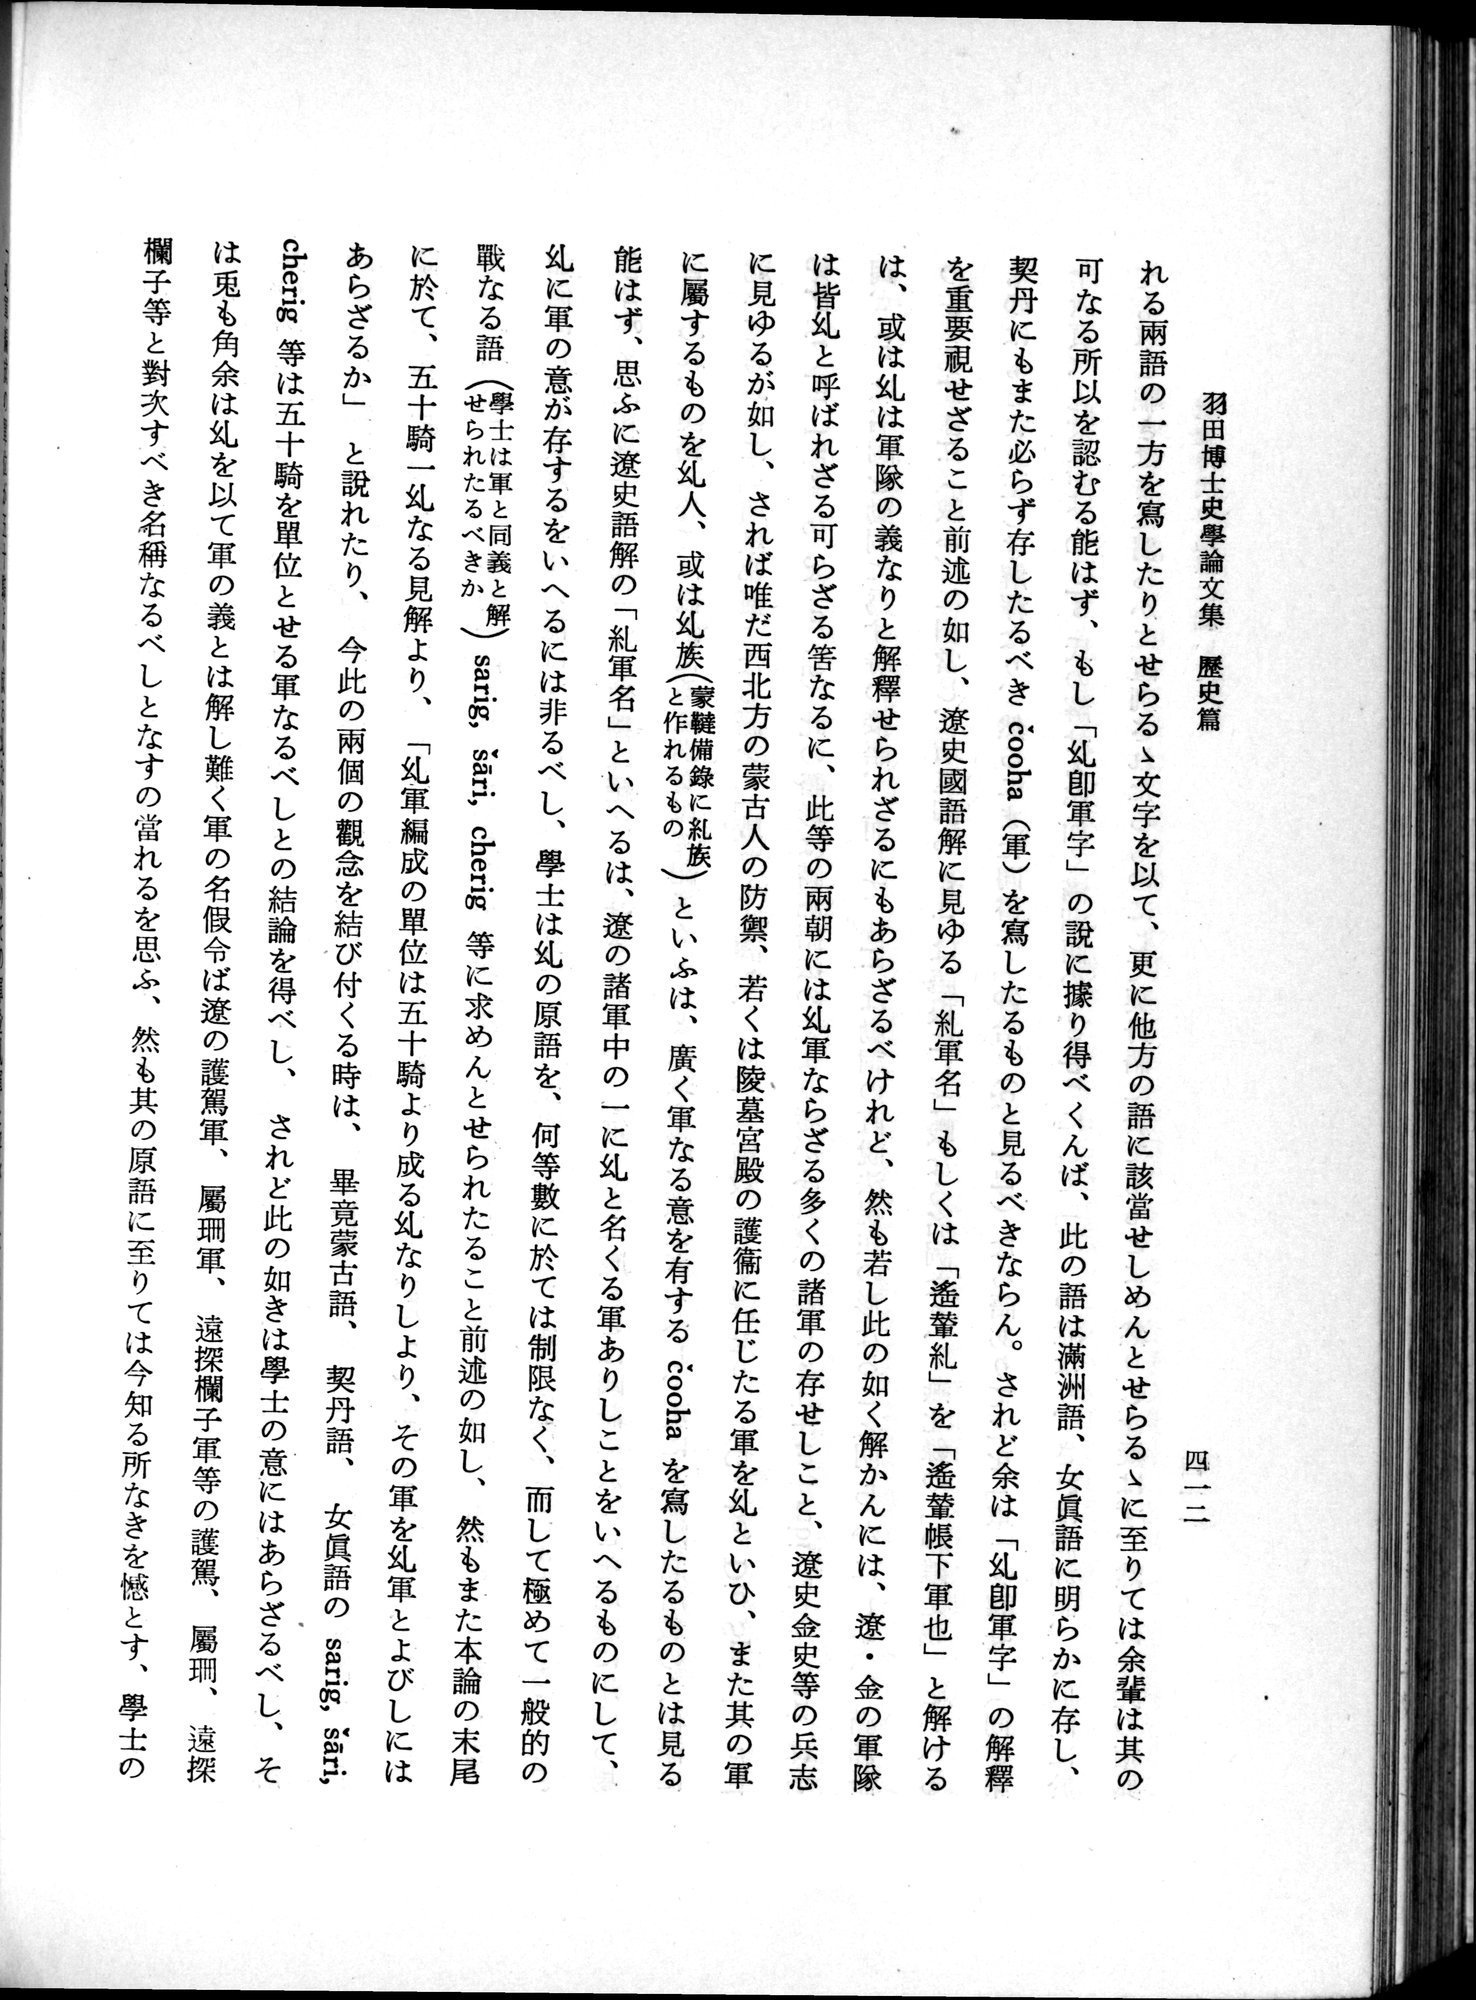 羽田博士史学論文集 : vol.1 / Page 450 (Grayscale High Resolution Image)